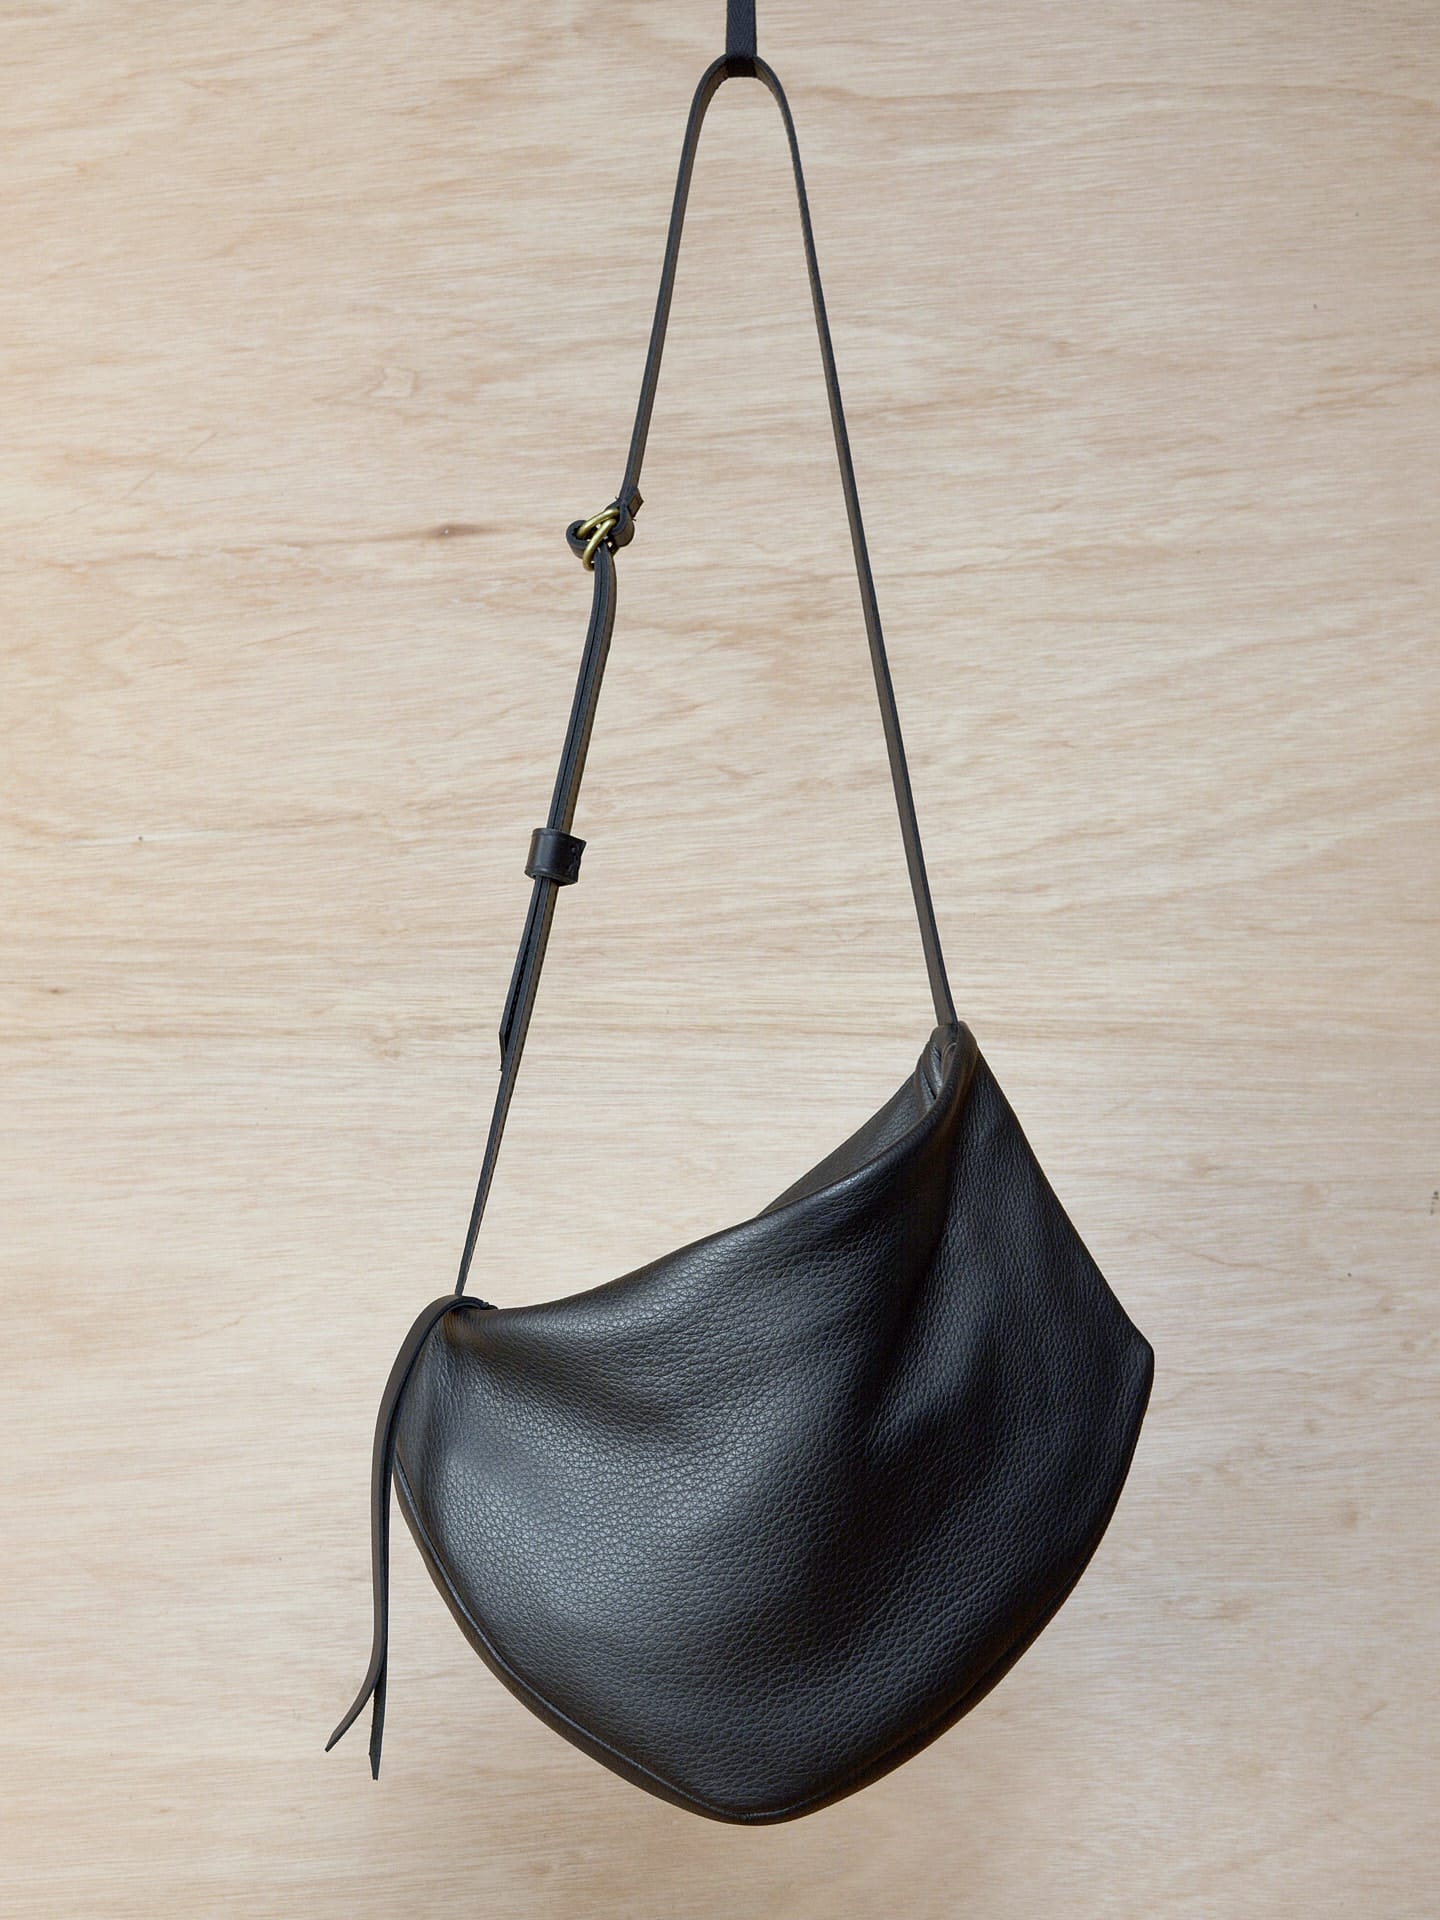 A Side Saddle black leather shoulder bag hanging on a wooden wall. Brand name: Kohl & Co.